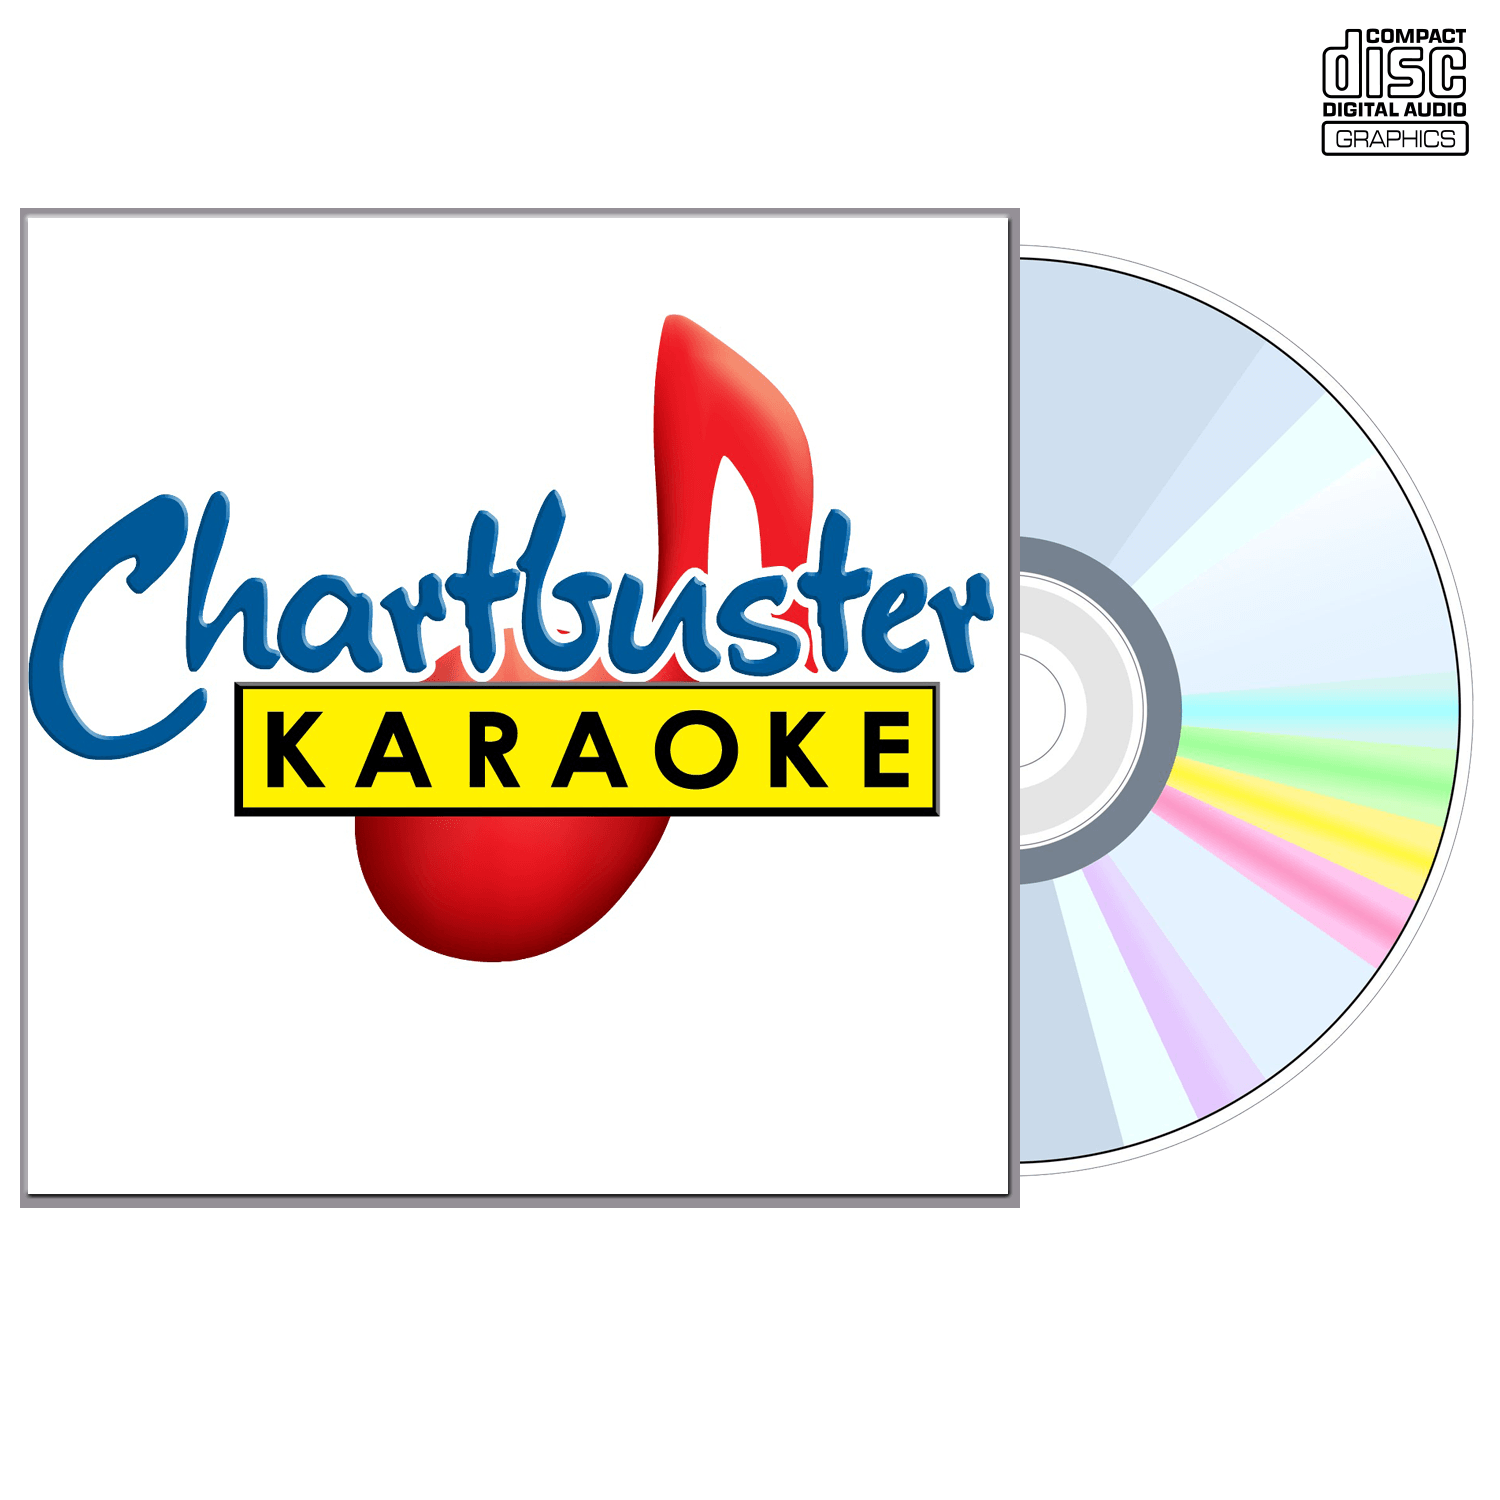 Aerosmith - CD+G - Chartbuster Karaoke - Karaoke Home Entertainment